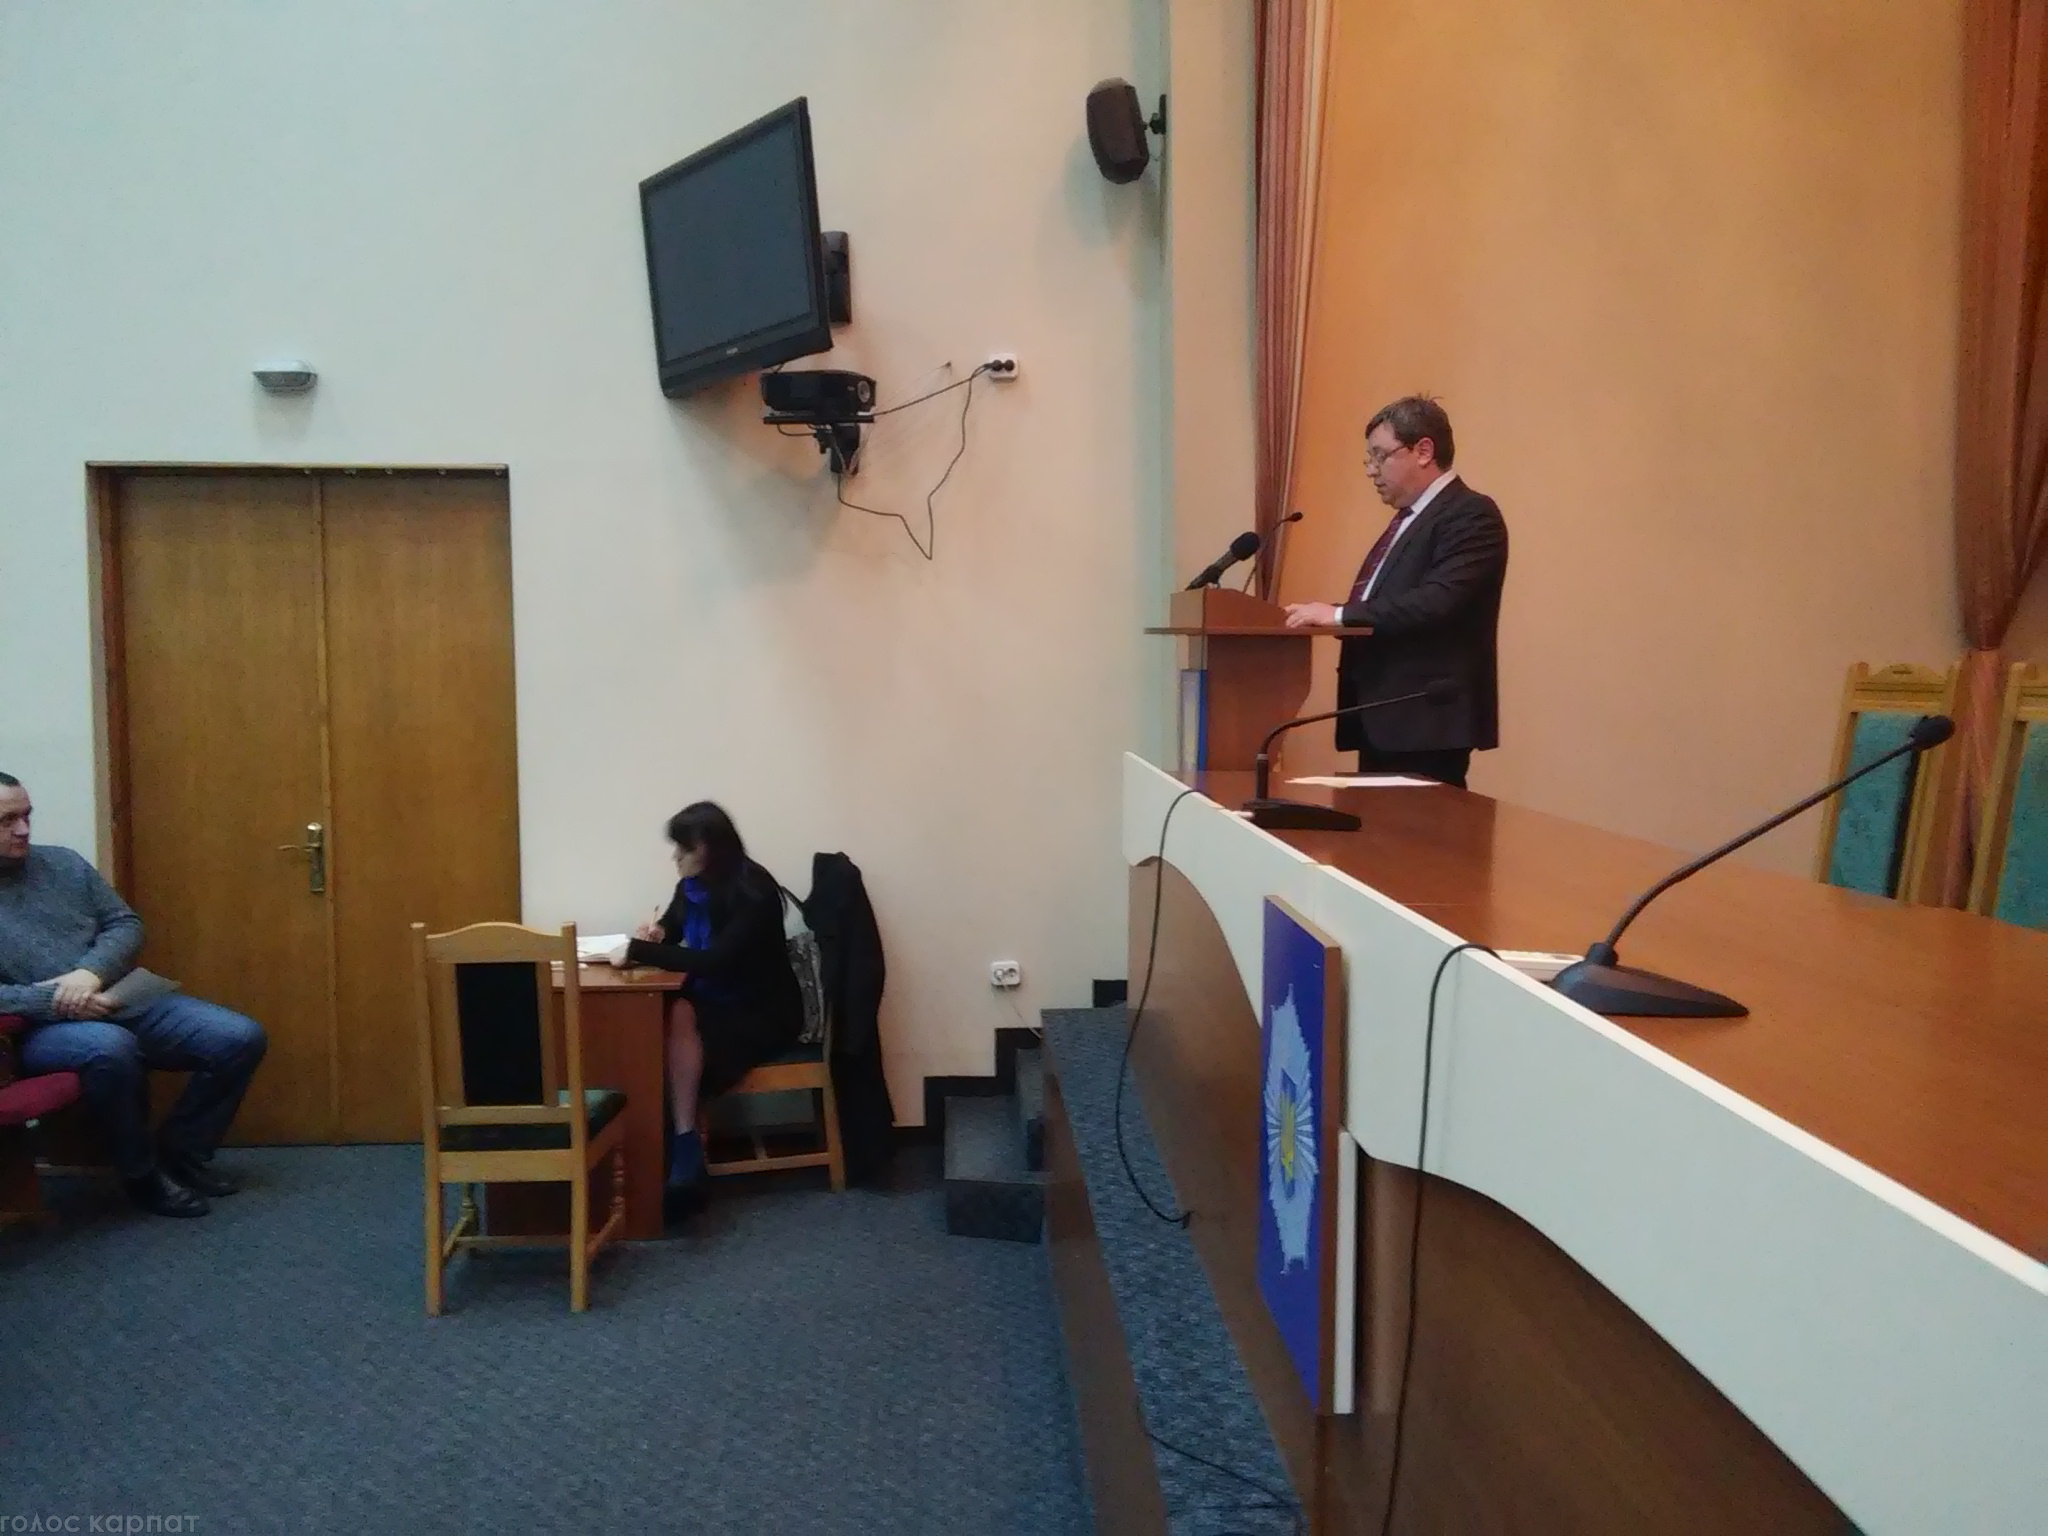 Сьогодні, 29 січня, у актовому залі Управління УМВС у Закарпатській області відбулися установчі збори для формування Громадської Ради при ГУ ДФС  у Закарпатській області.